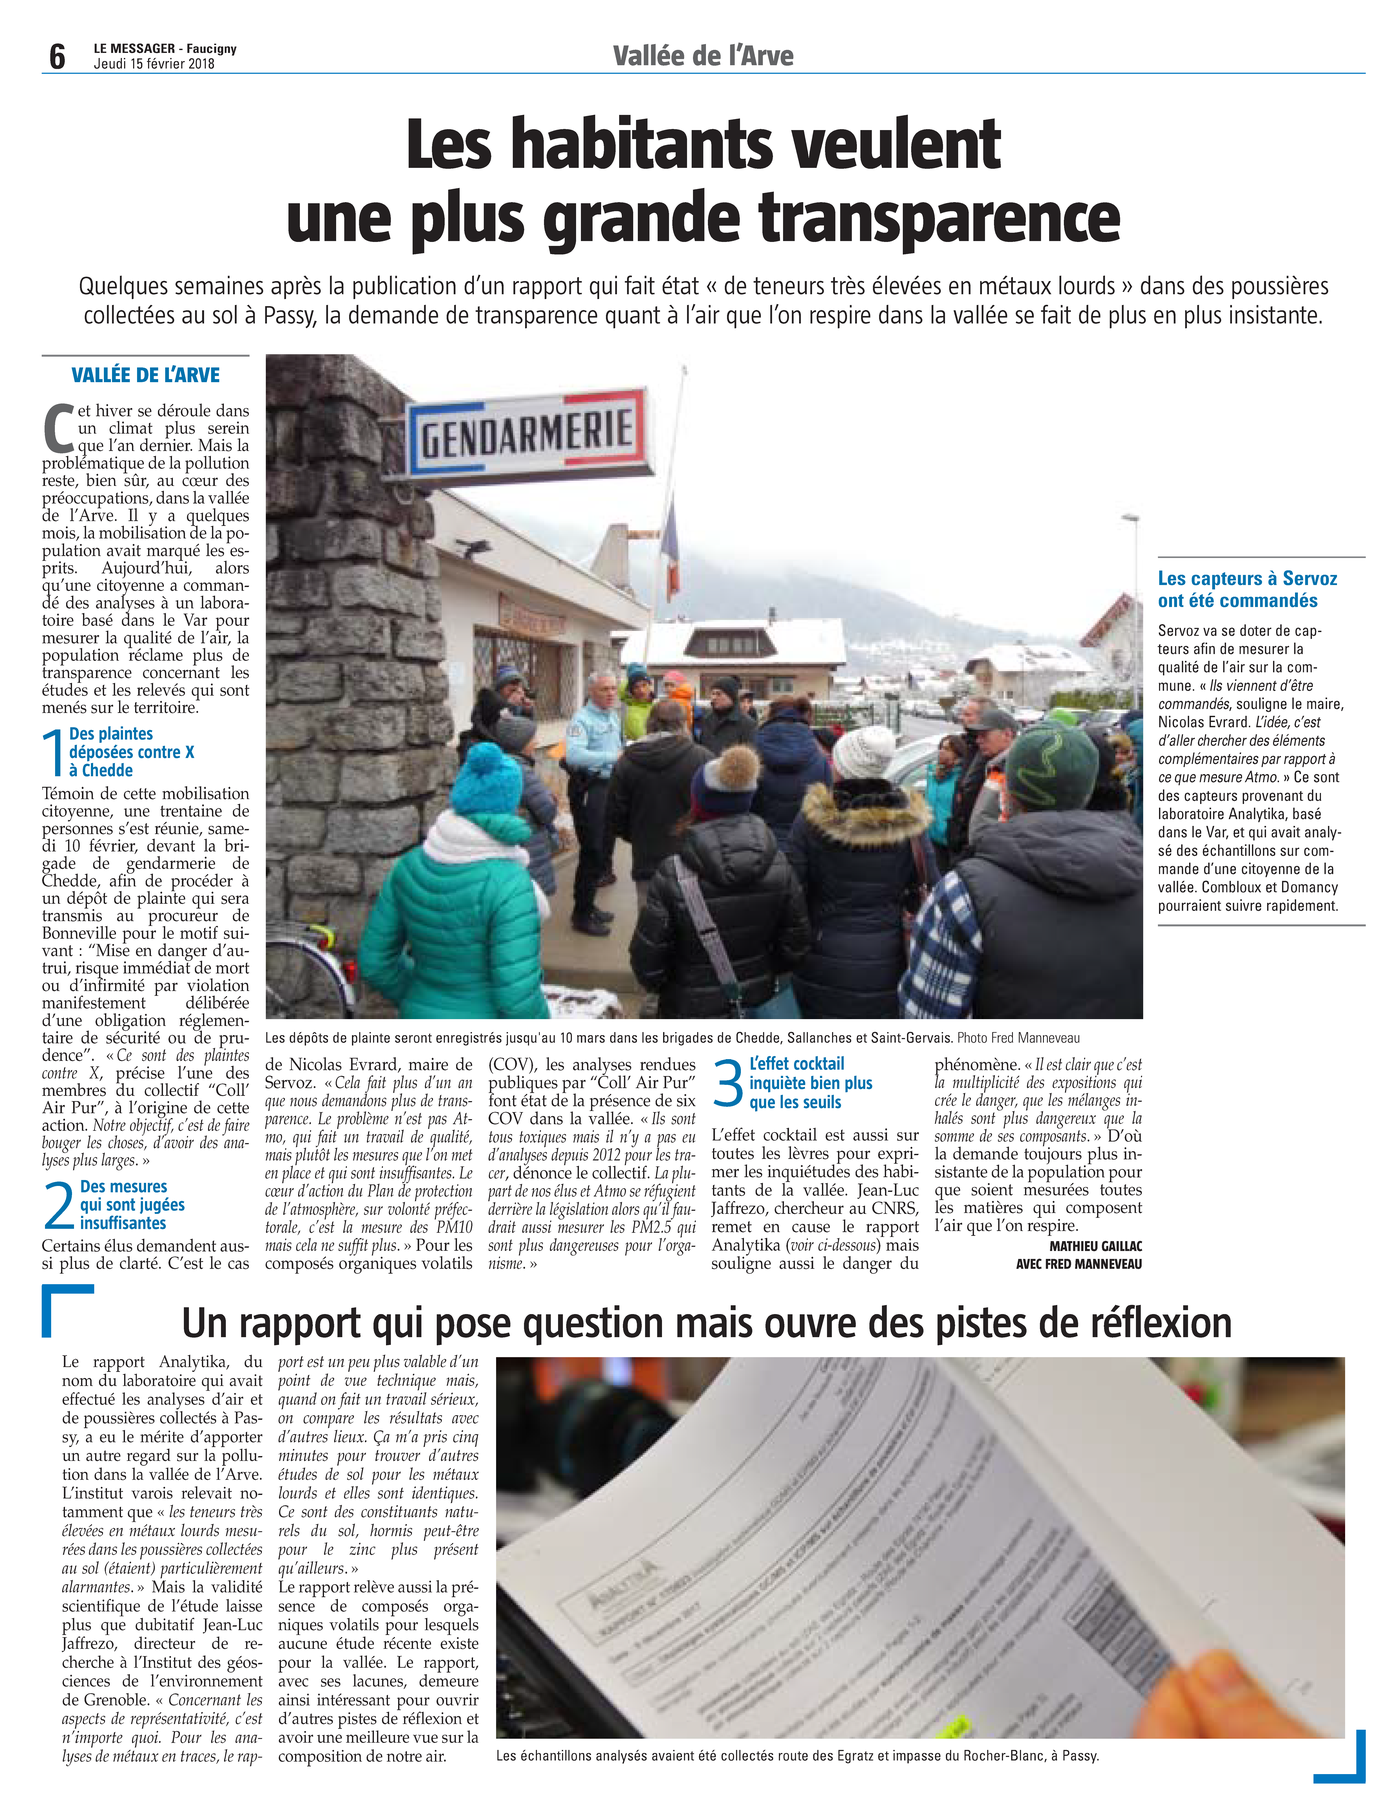 15.02.2018 > LE MESSAGER : "Vallée de l'Arve : Les habitants veulent une plus grande transparence"